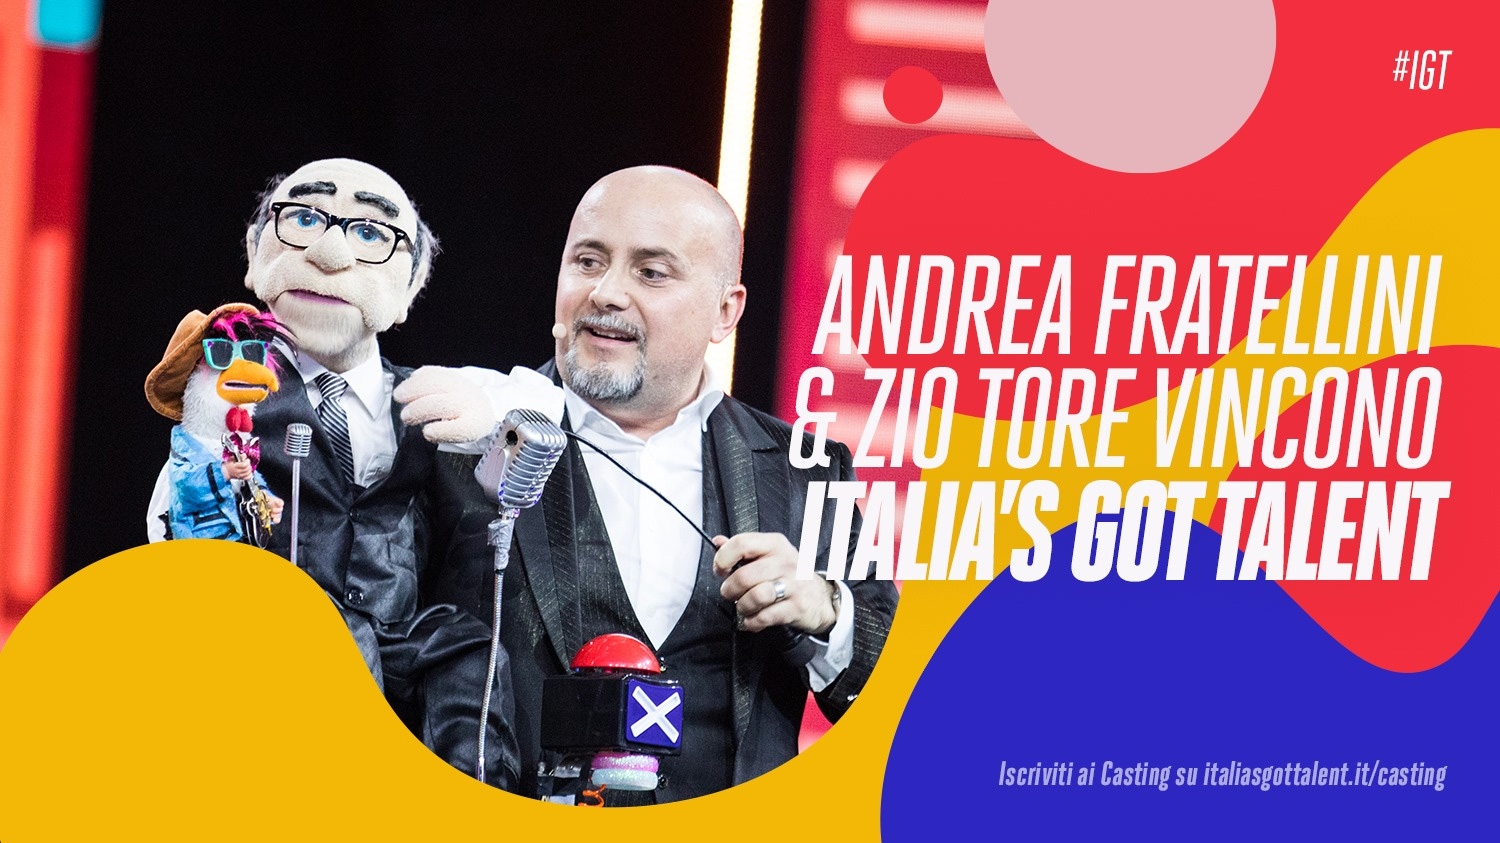 Italia's Got Talent 2020 - Finale: ha vinto Andrea Fratellini con Zio Tore